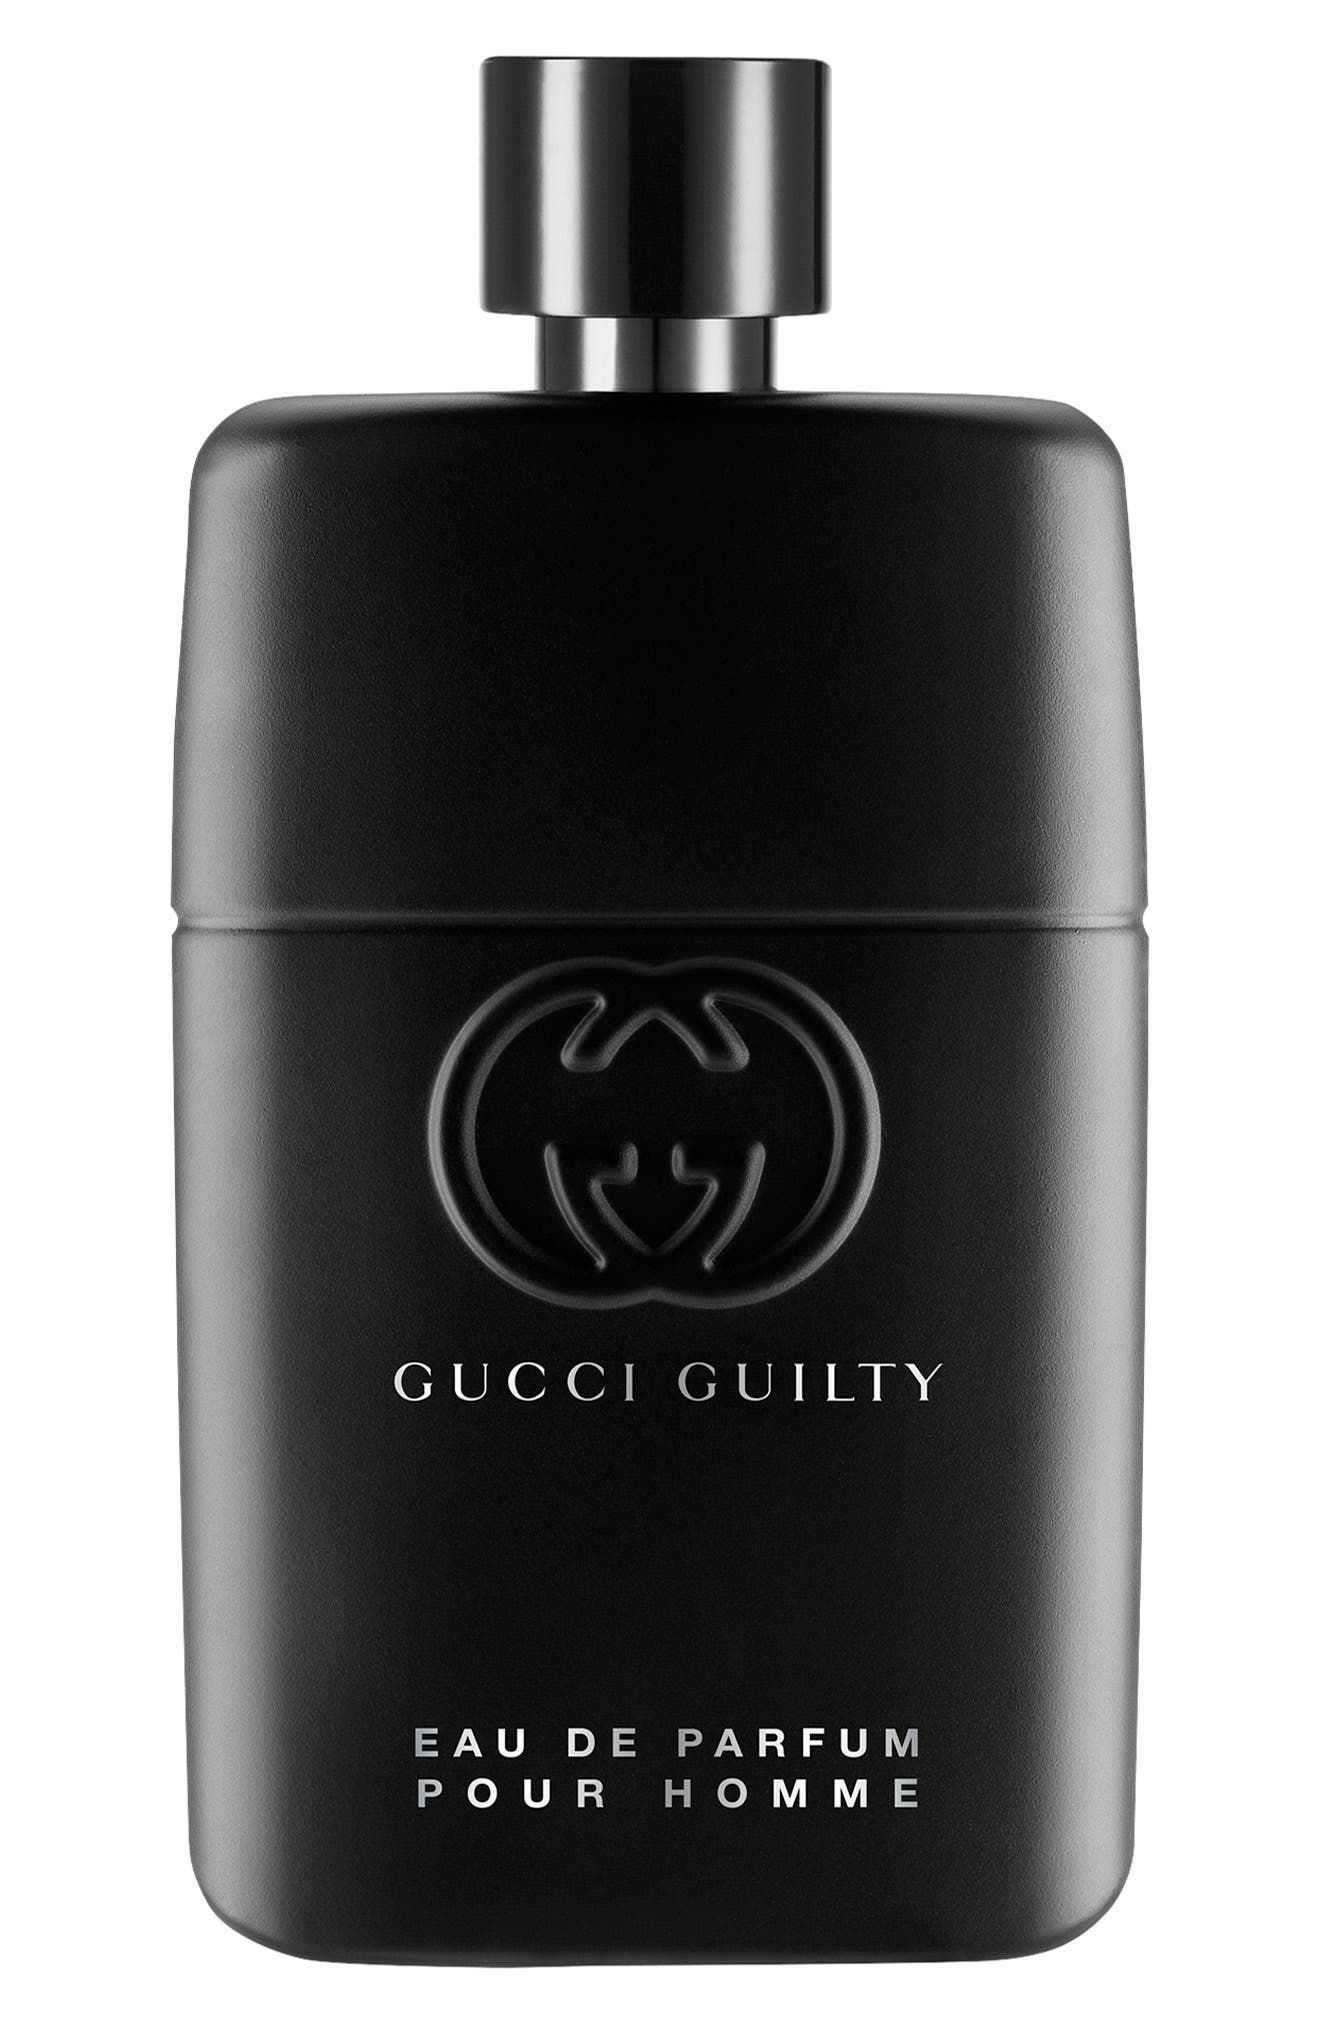 Gucci Guilty Pour Homme Eau de Parfum at Nordstrom, Size 1.7 Oz